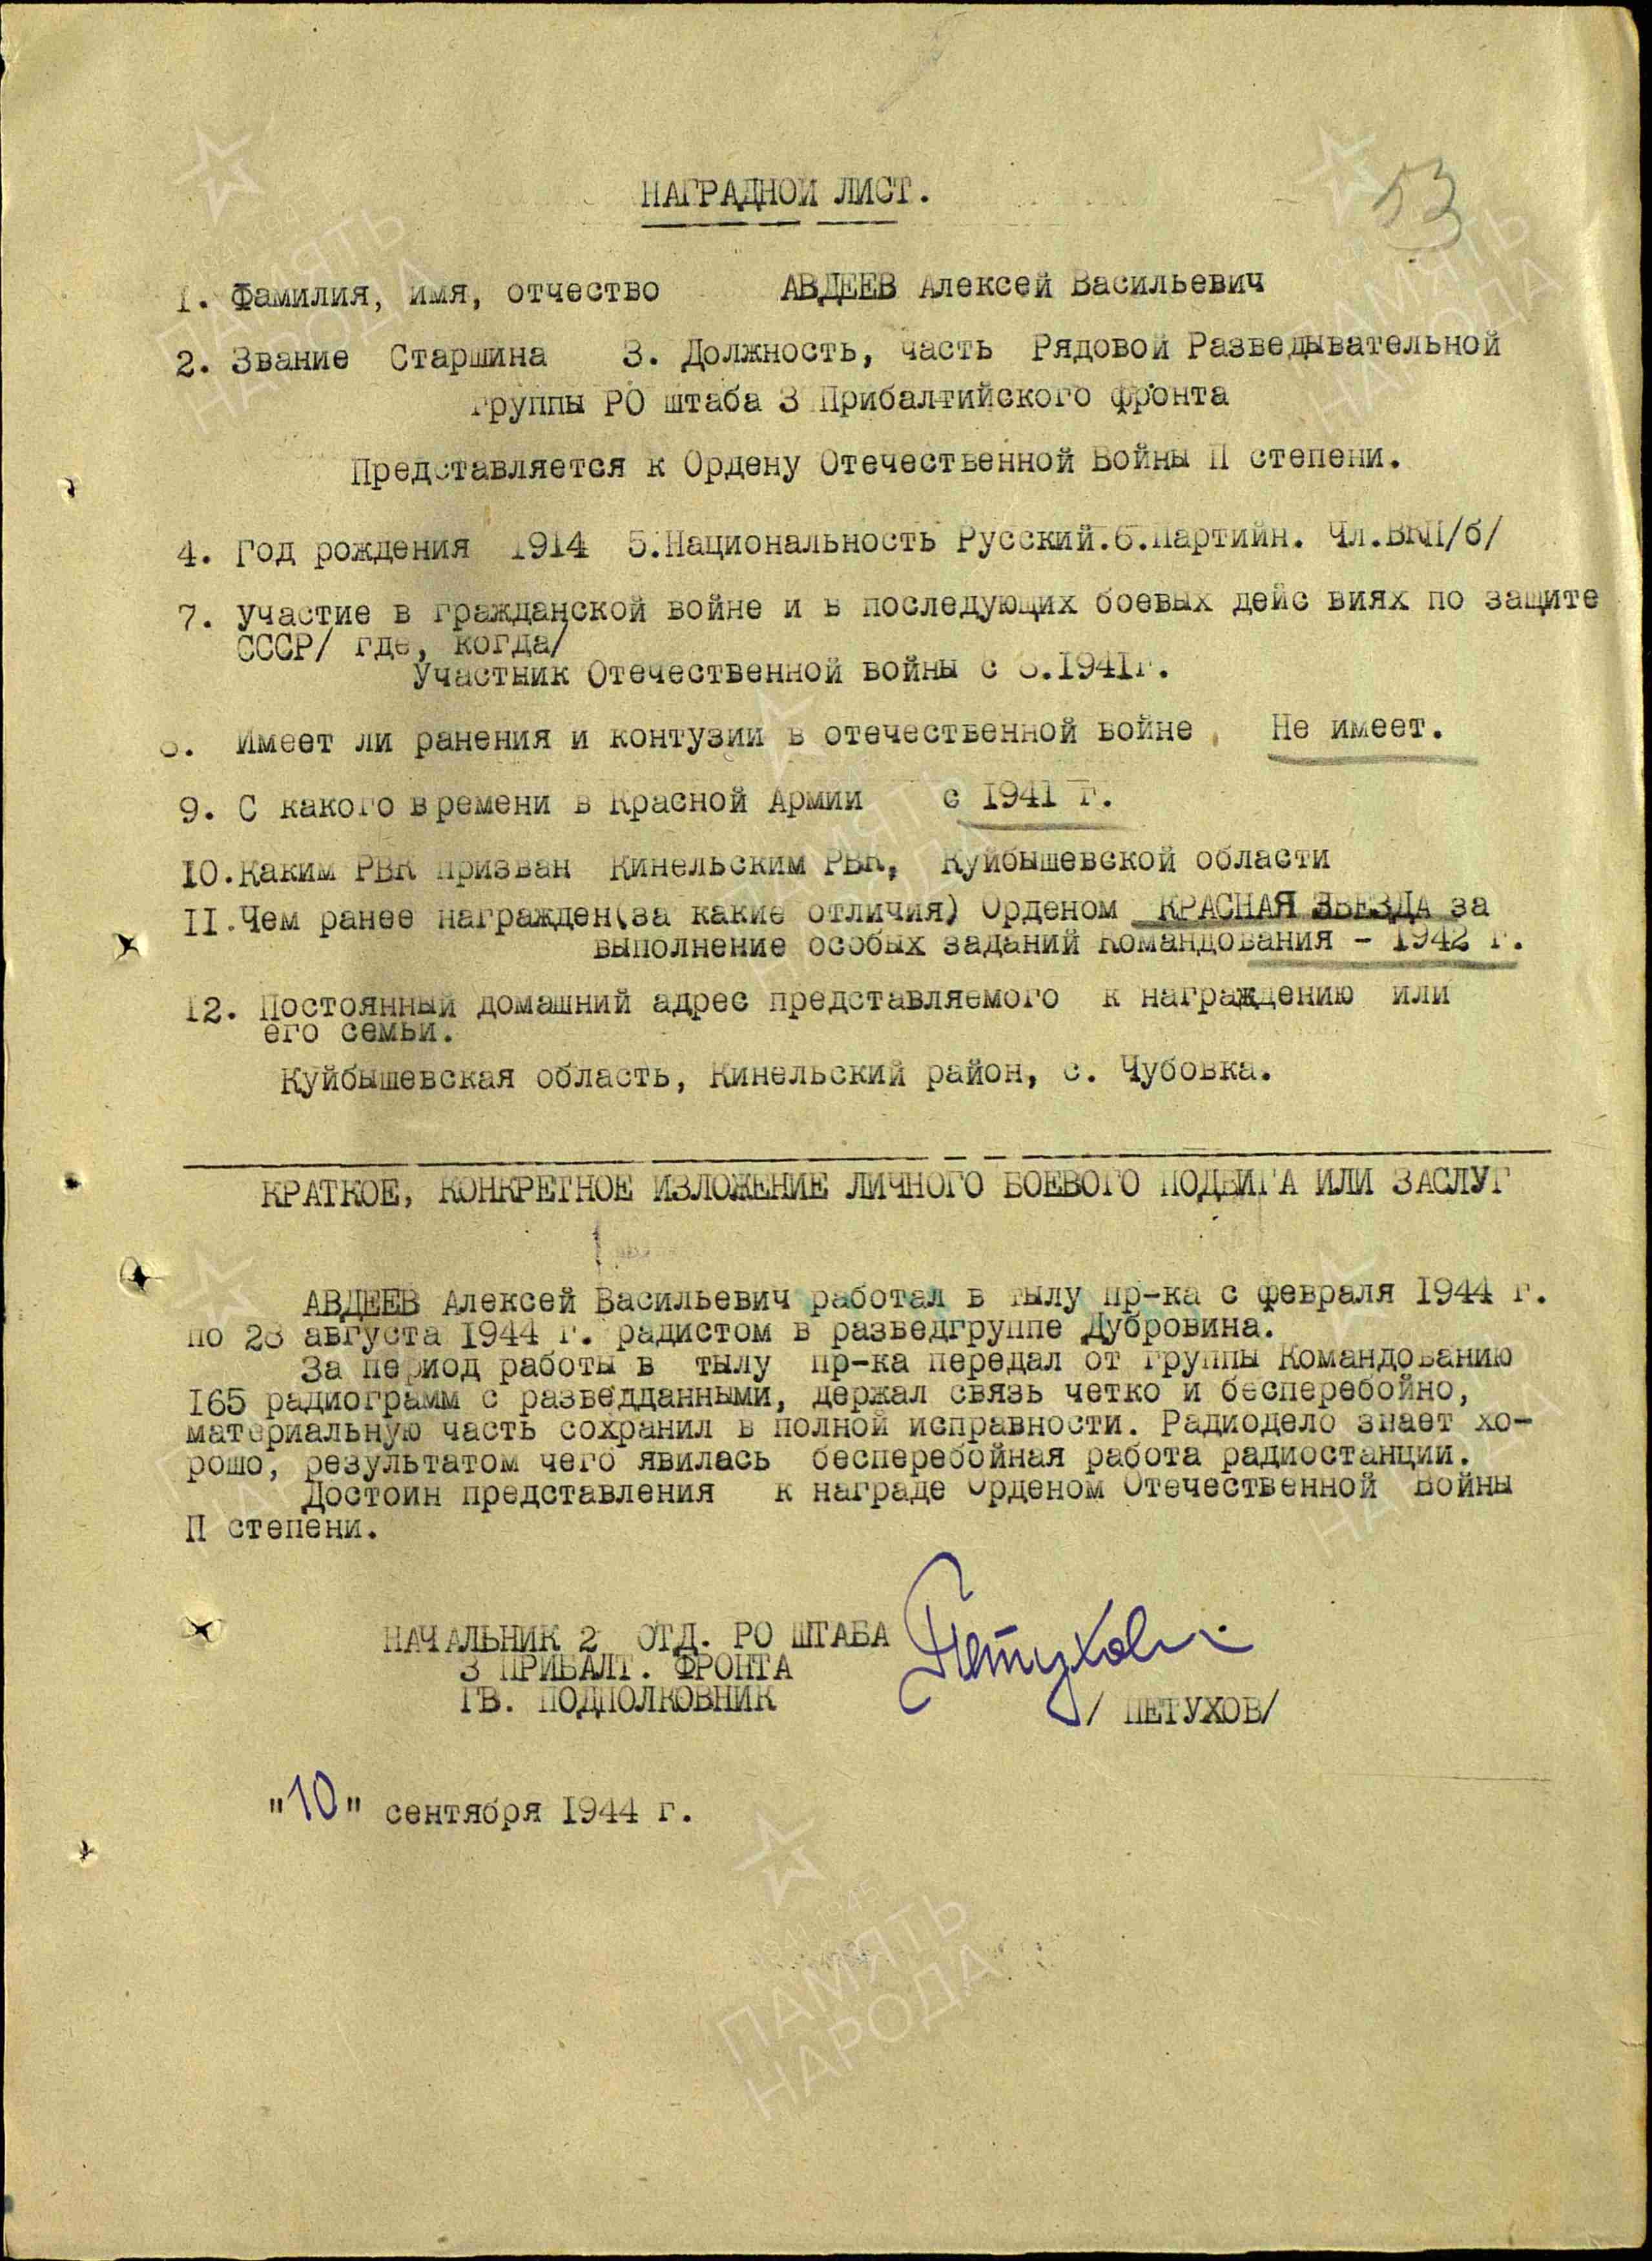 Авдеев А.В. Наградной лист от 10.10.1944 г. к ордену Отечественной войны II степени (архивная копия) 